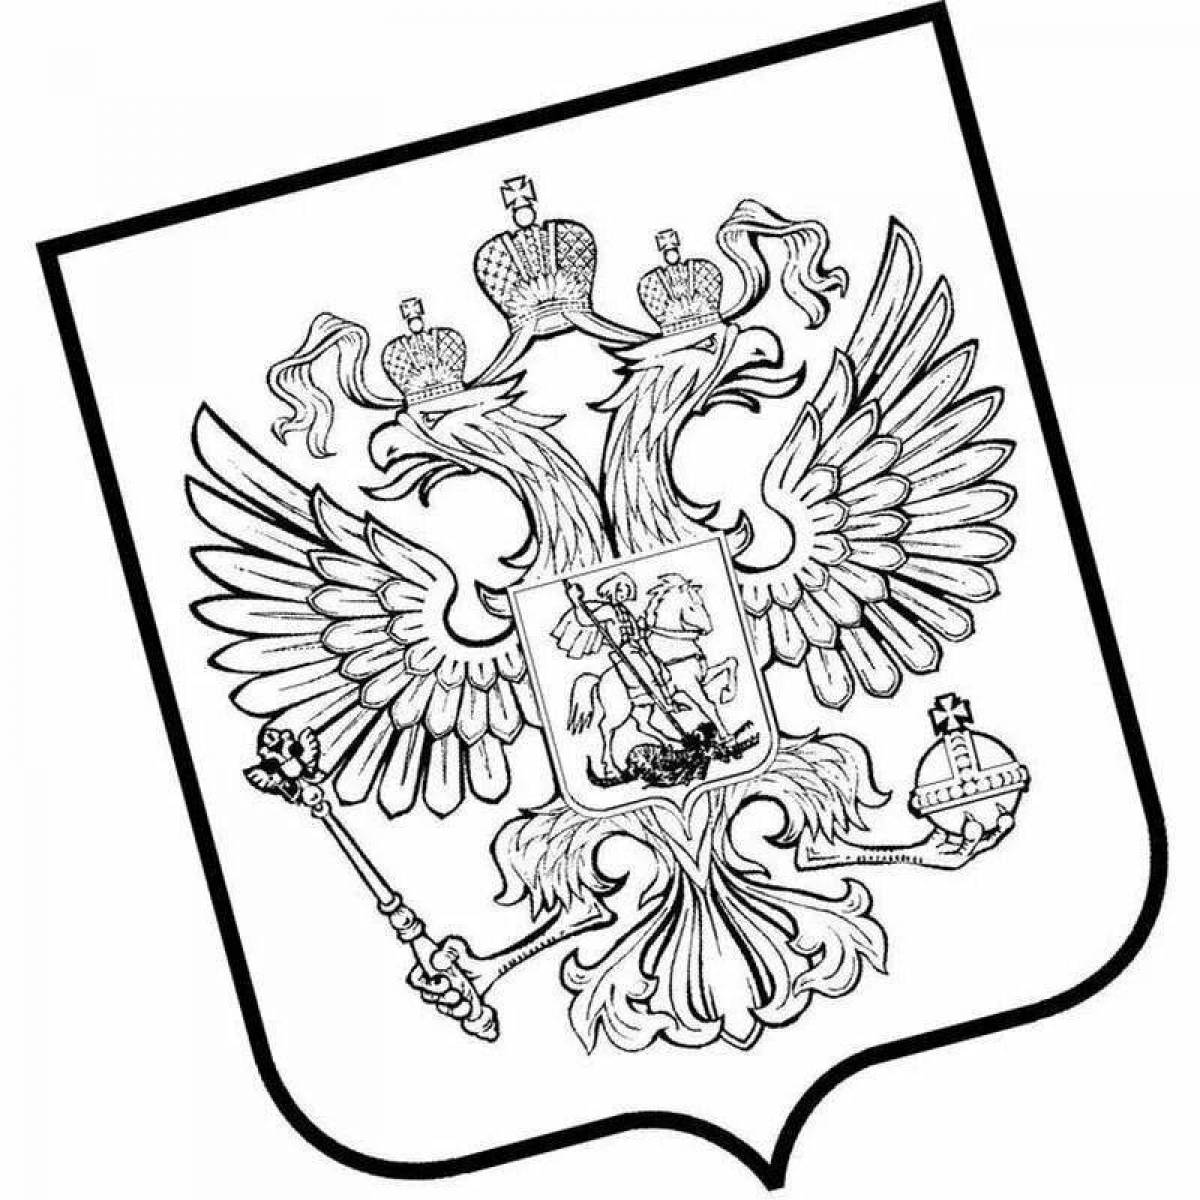 Герб российской федерации #15